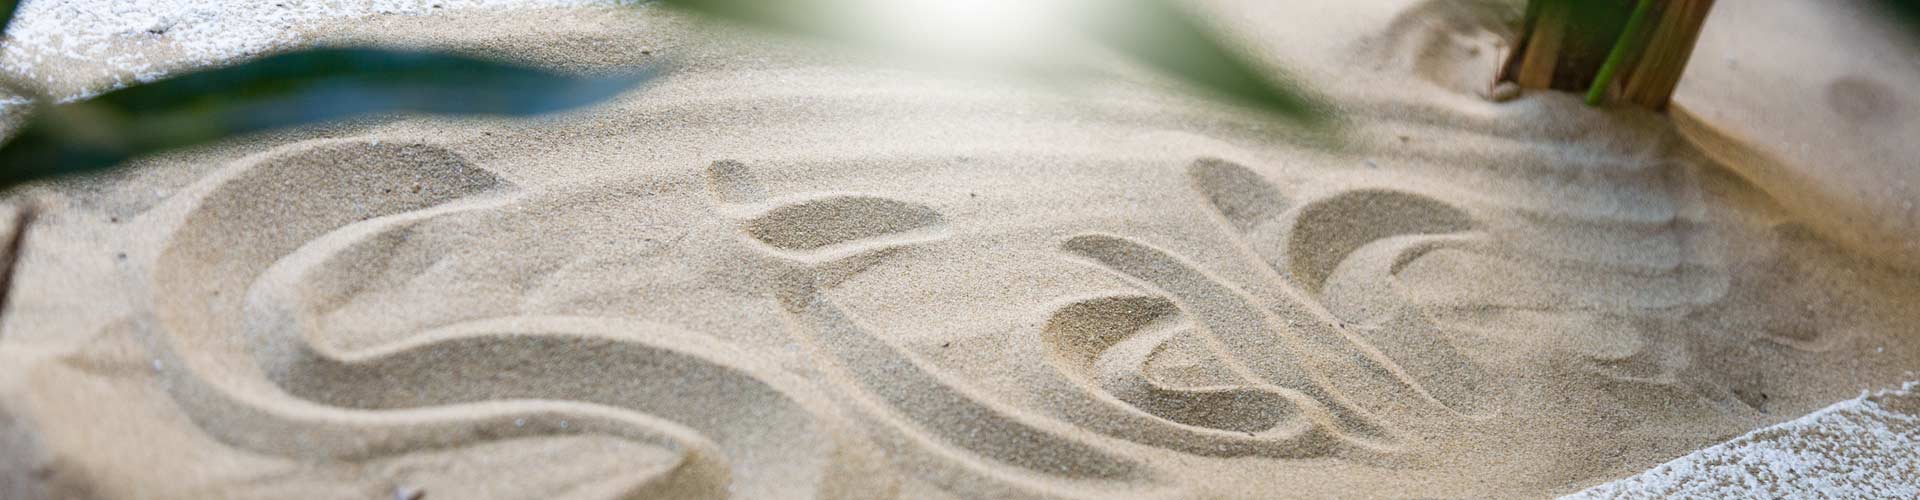 Fotografia della sabbia della spiaggia